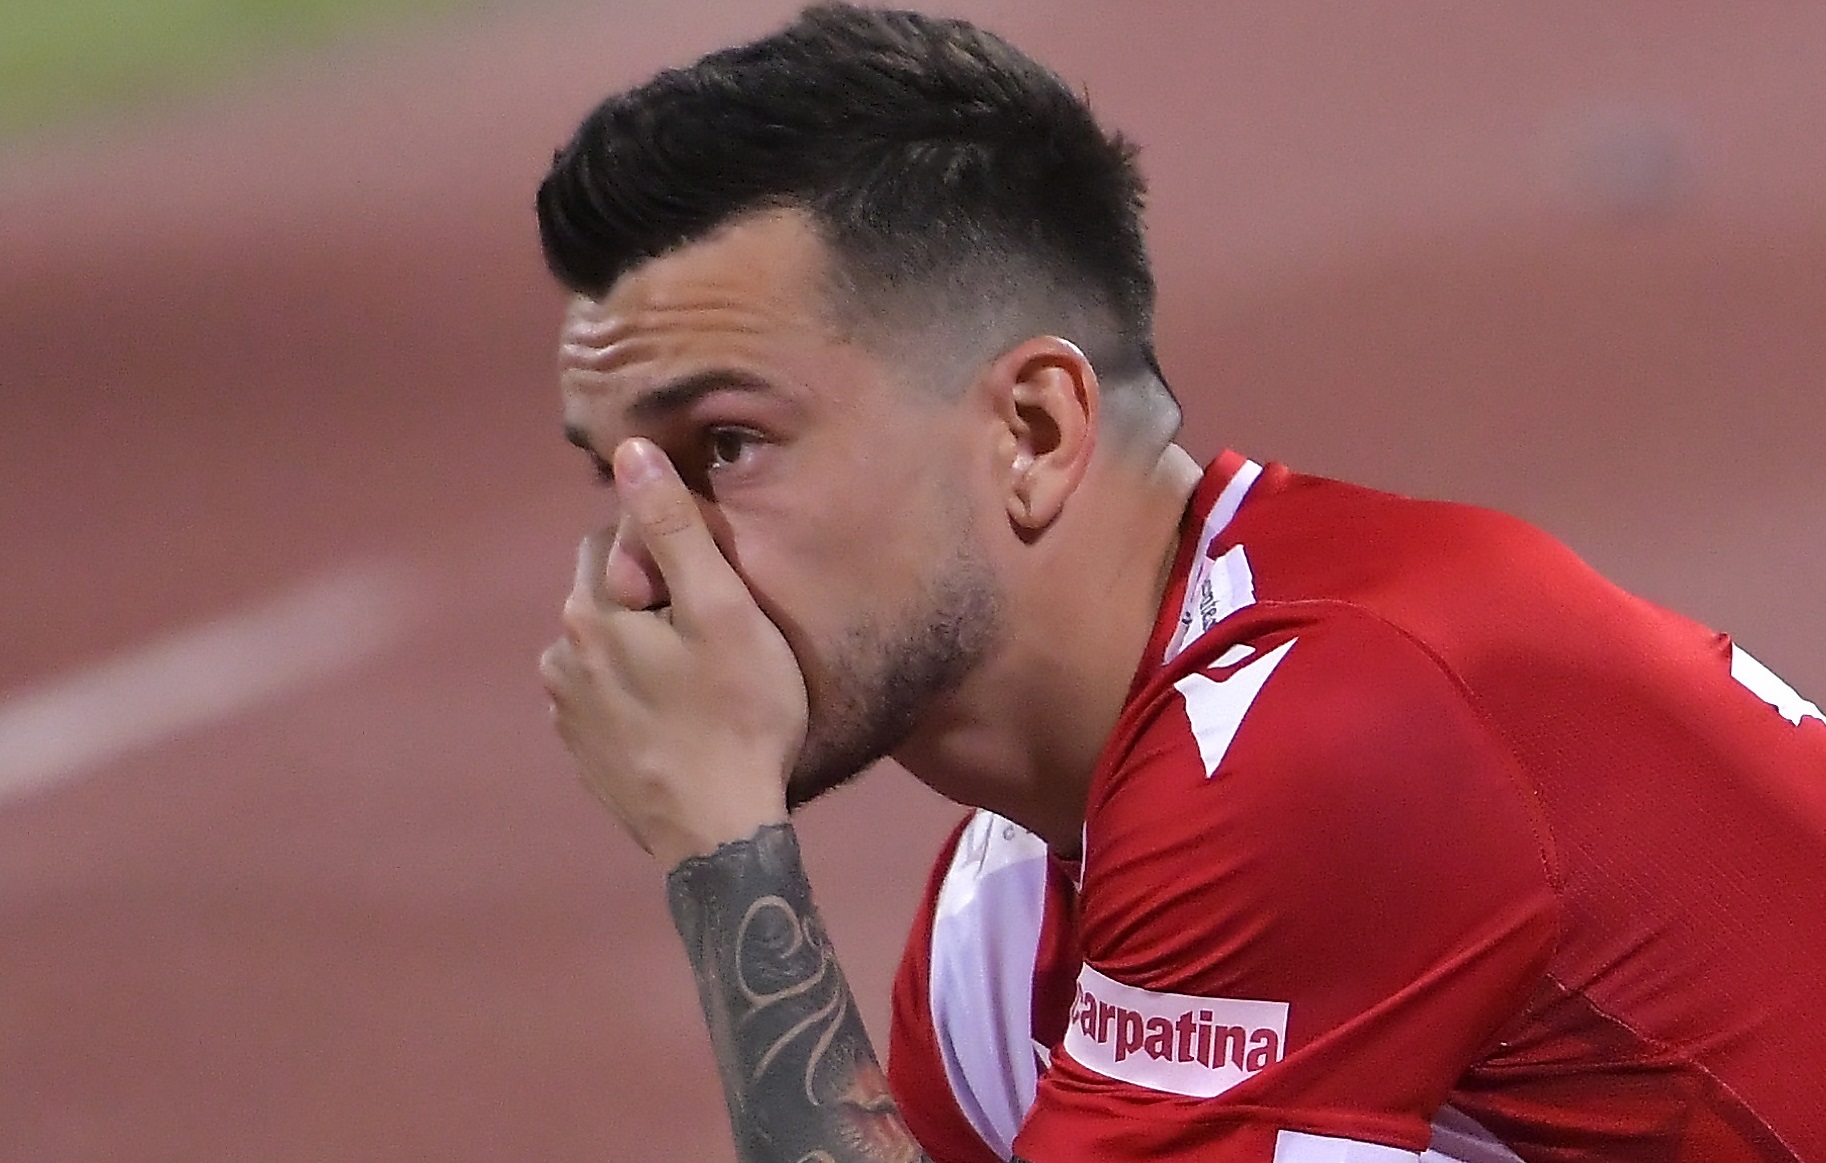 Agentul lui Cosmin Matei a reacționat, după ce fotbalistul a fost suspendat 6 luni pentru dopaj: ”A venit nenorocirea”